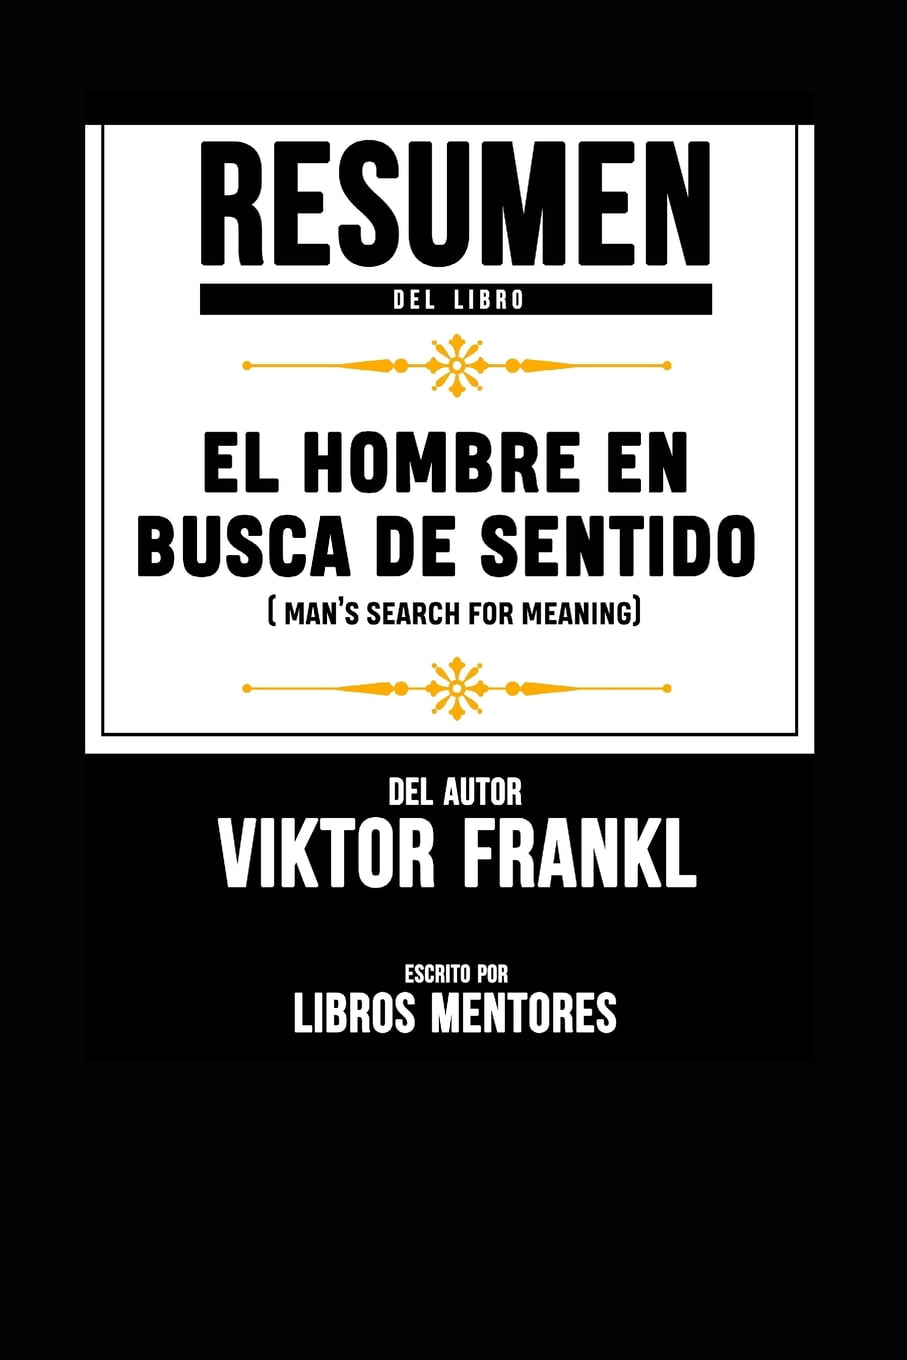 El hombre en busca de sentido de Viktor Frankel: resumen del libro